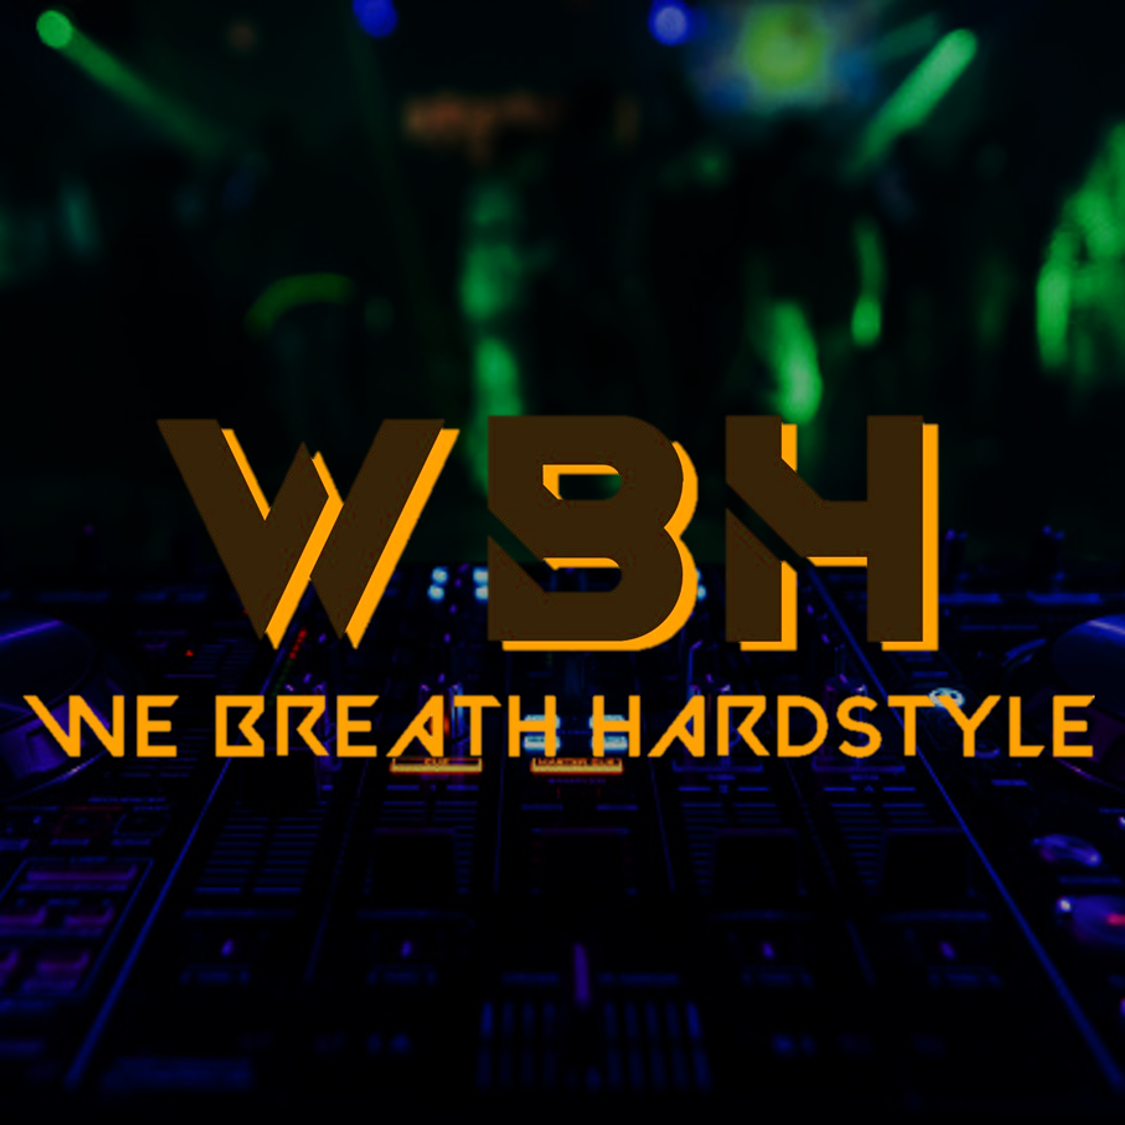 We breath HDM